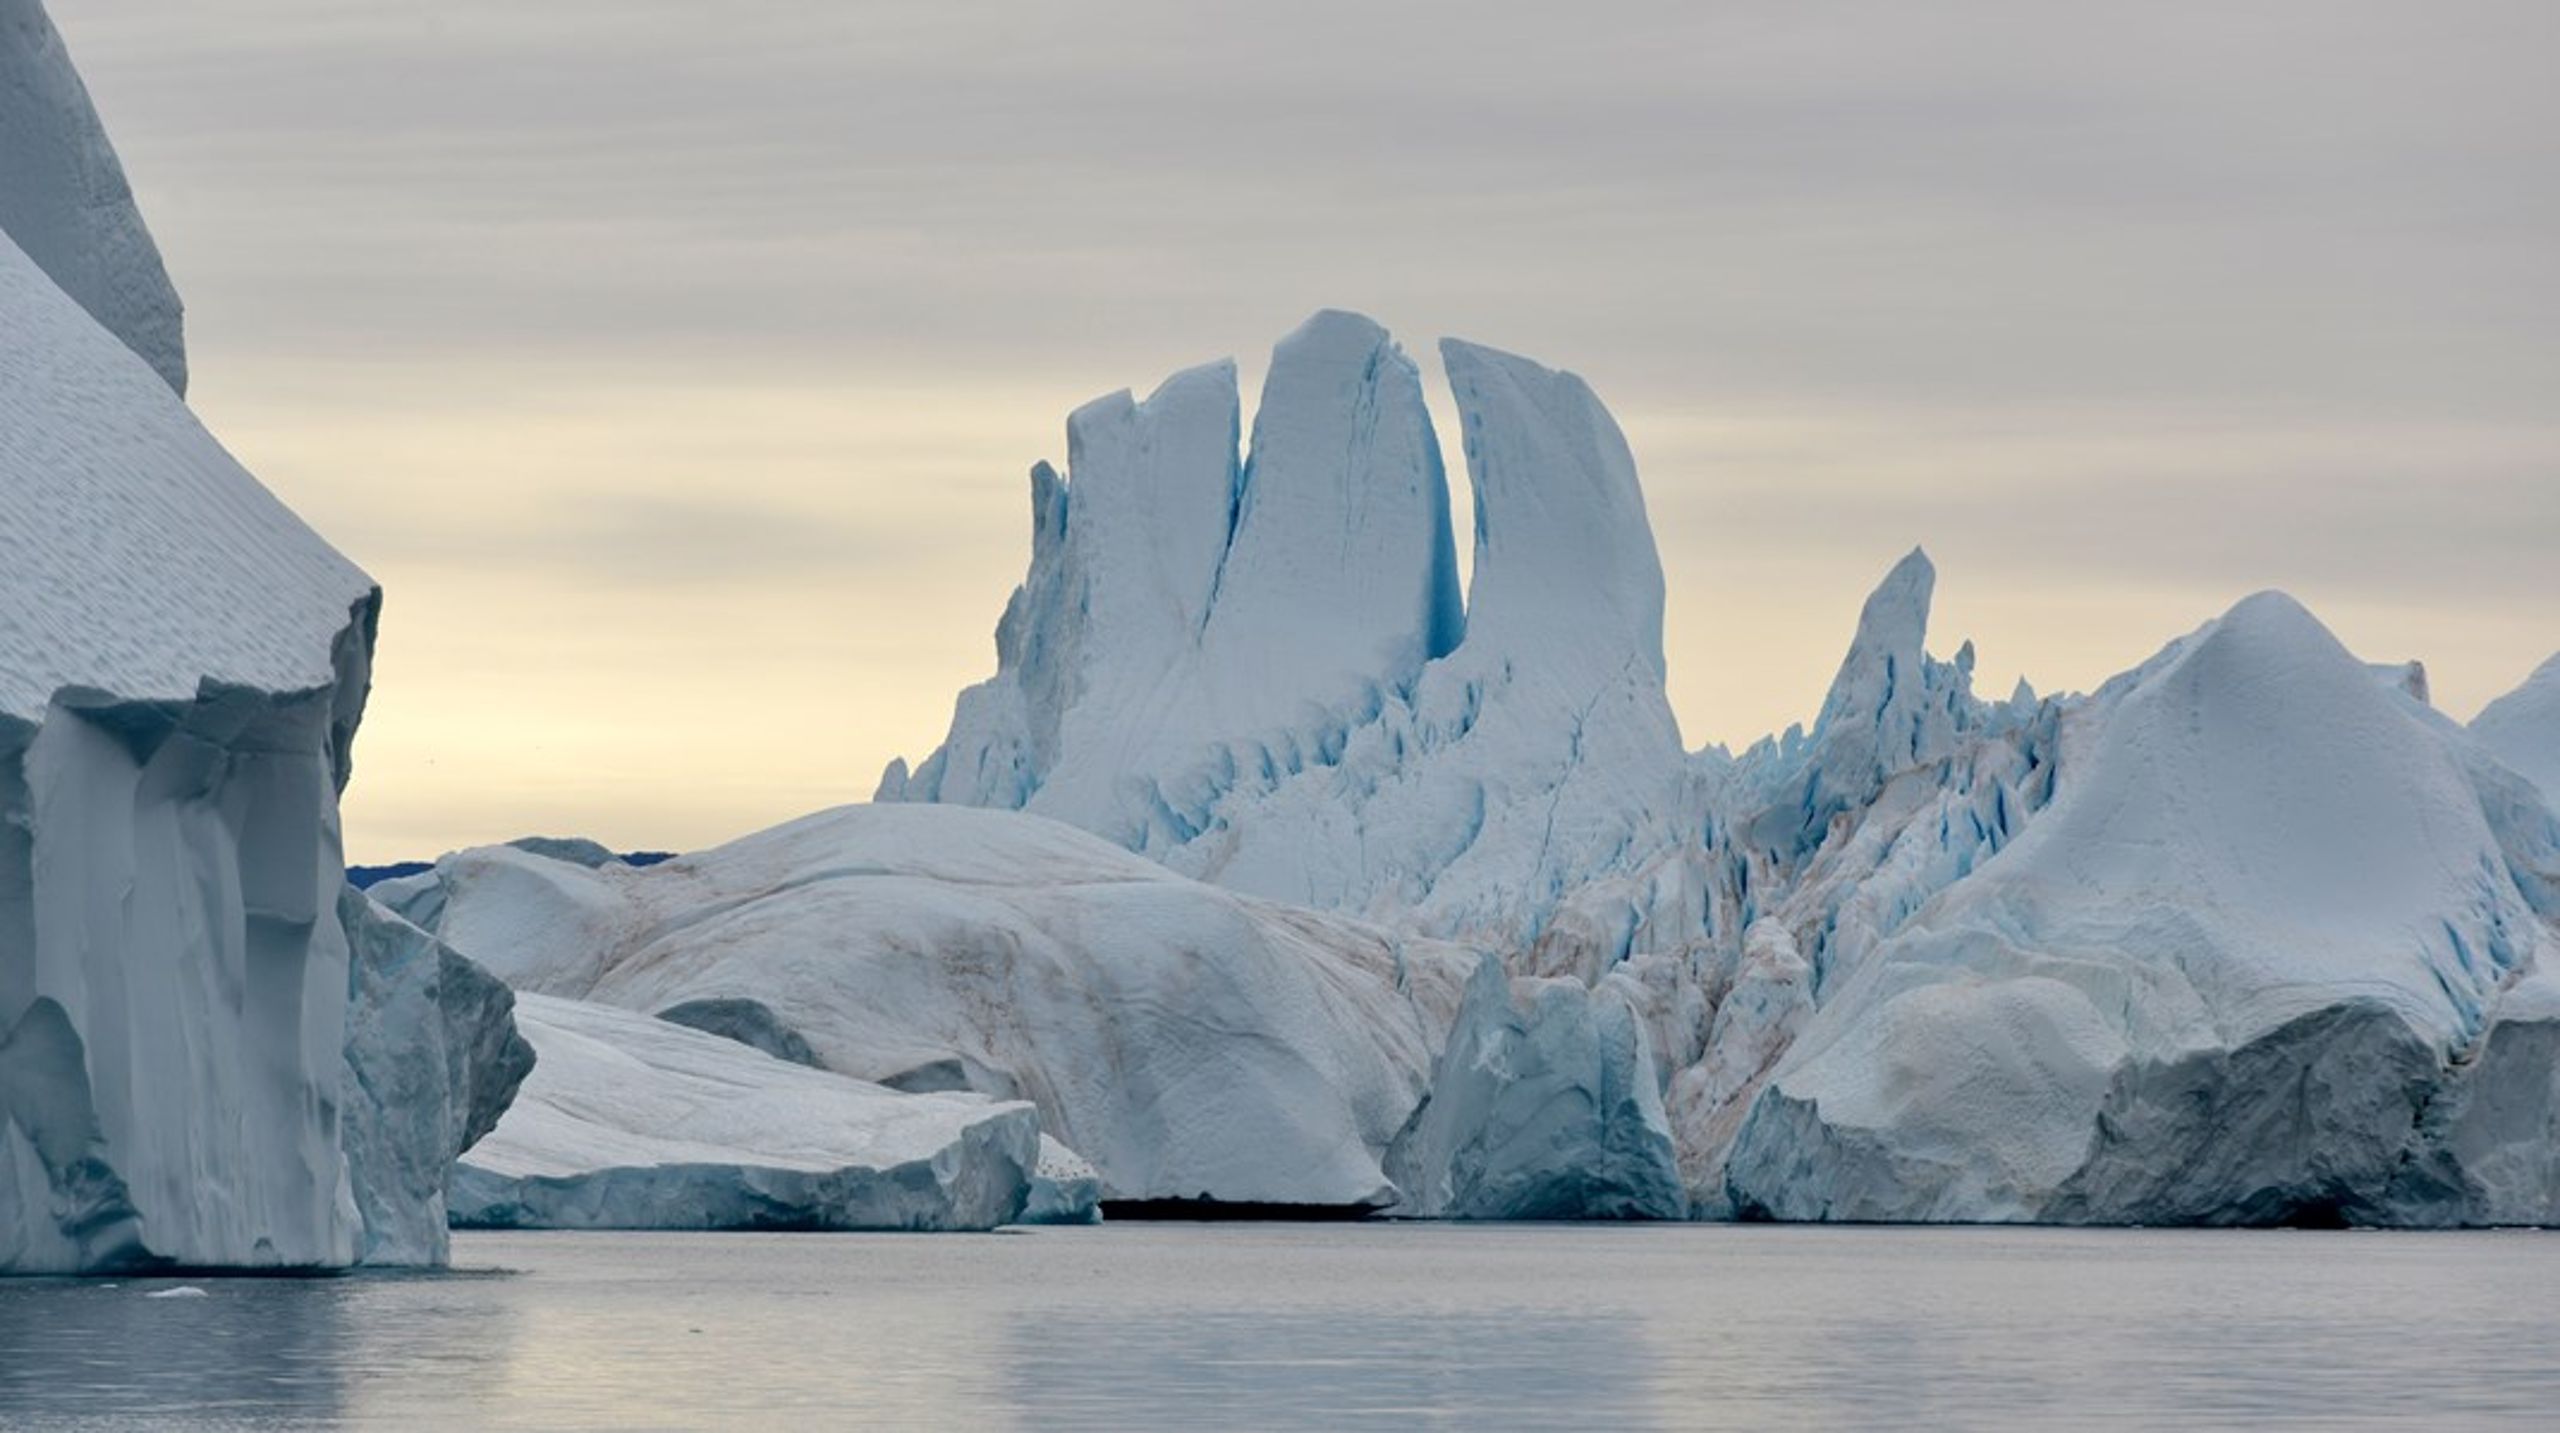 Lodrette,&nbsp;fleksible&nbsp;gardiner fastgjort til havbunden i eksempelvis isfjorden i Ilulissat&nbsp;er blandt de kontroversielle løsninger, der i stadigt højere grad bliver talt seriøst om.